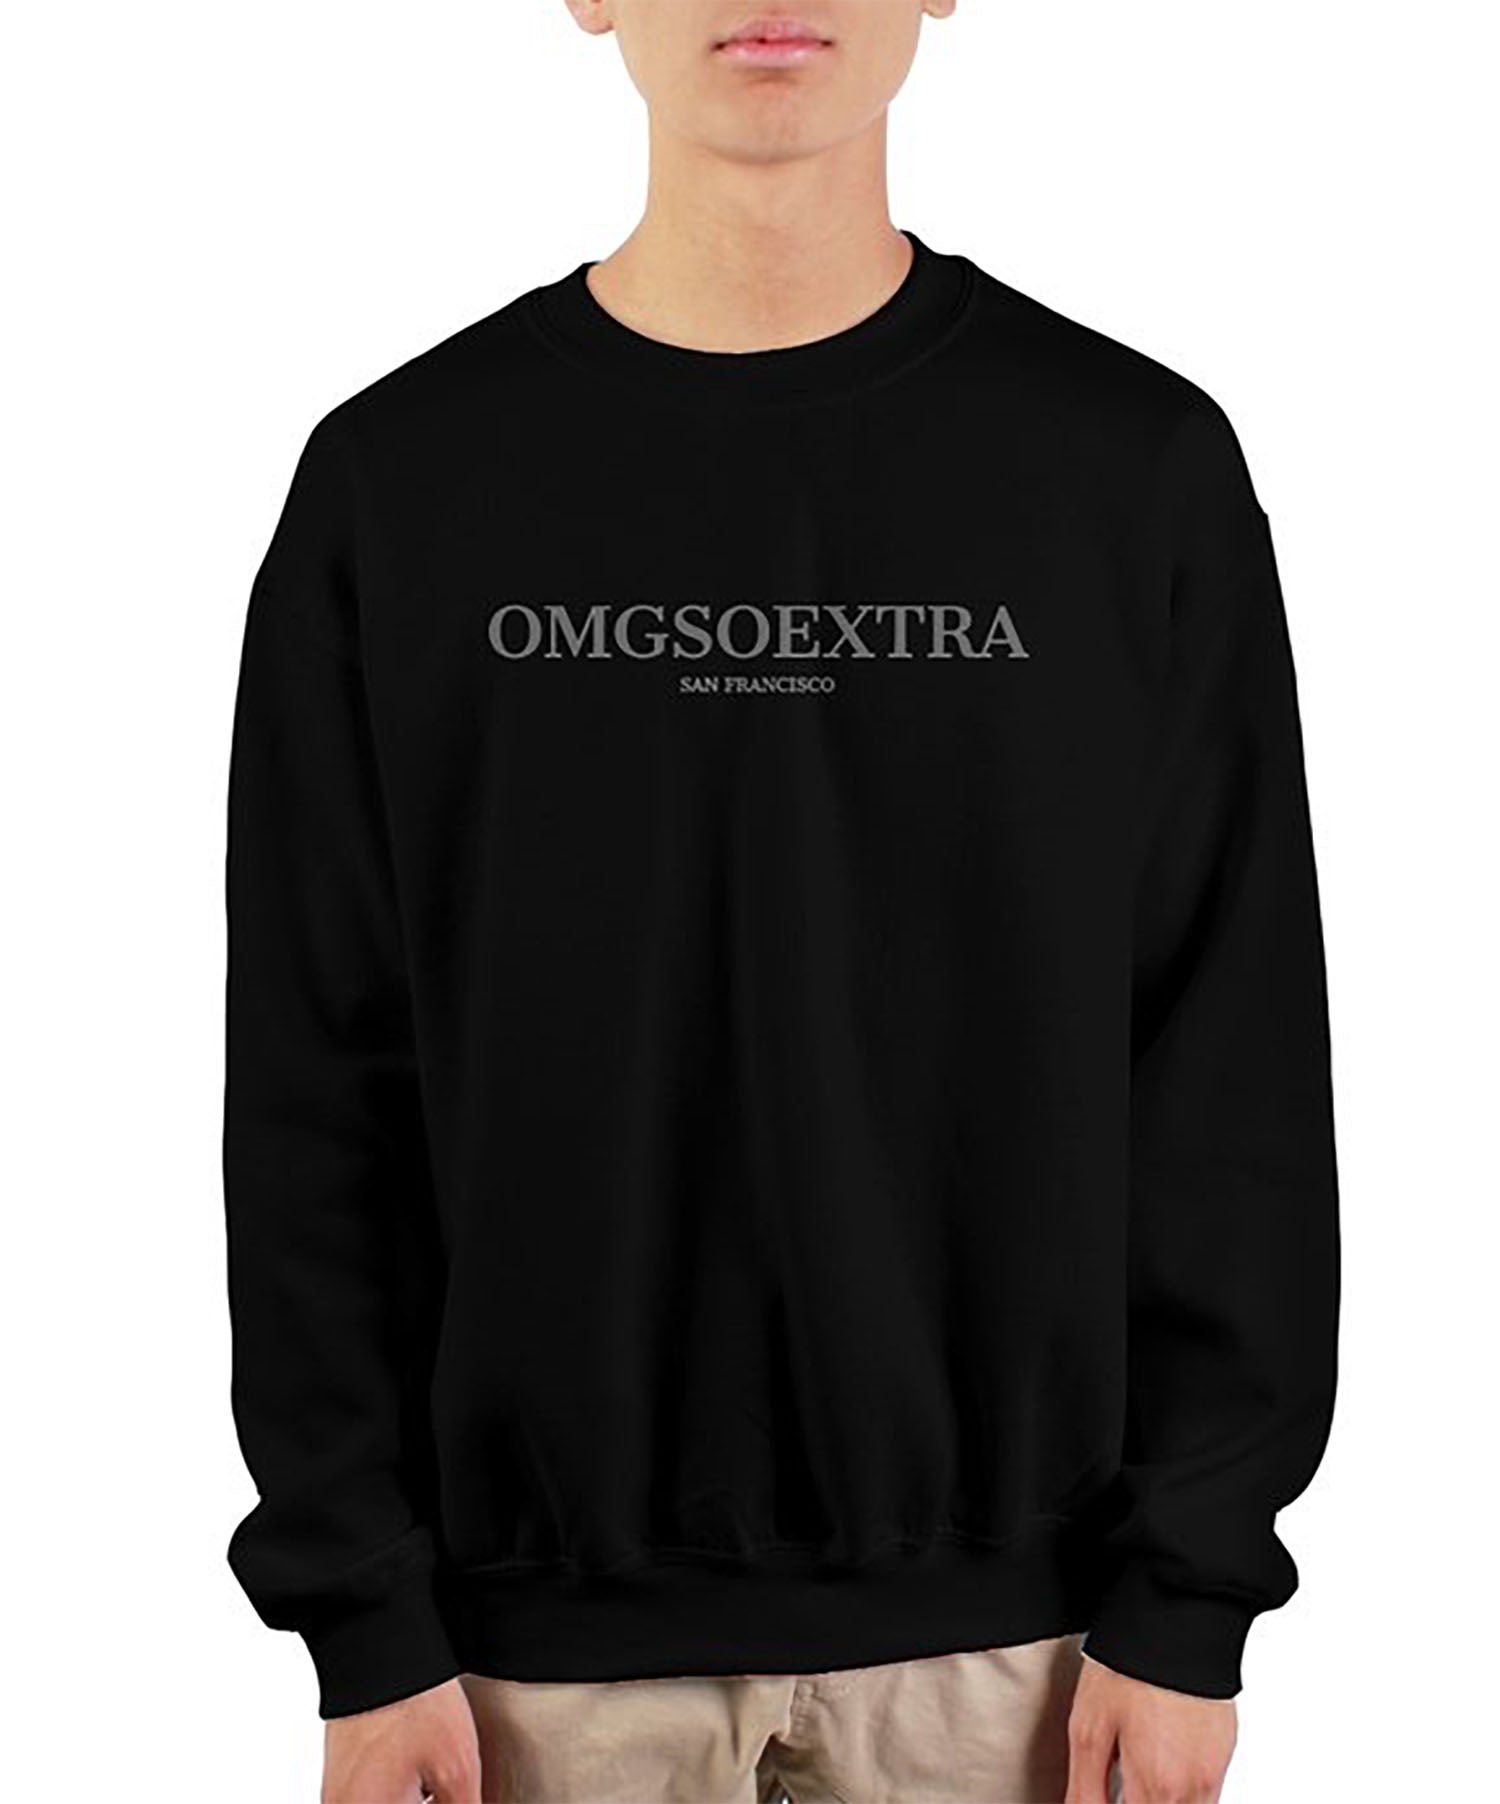 OMGSOEXTRA Sweatshirt